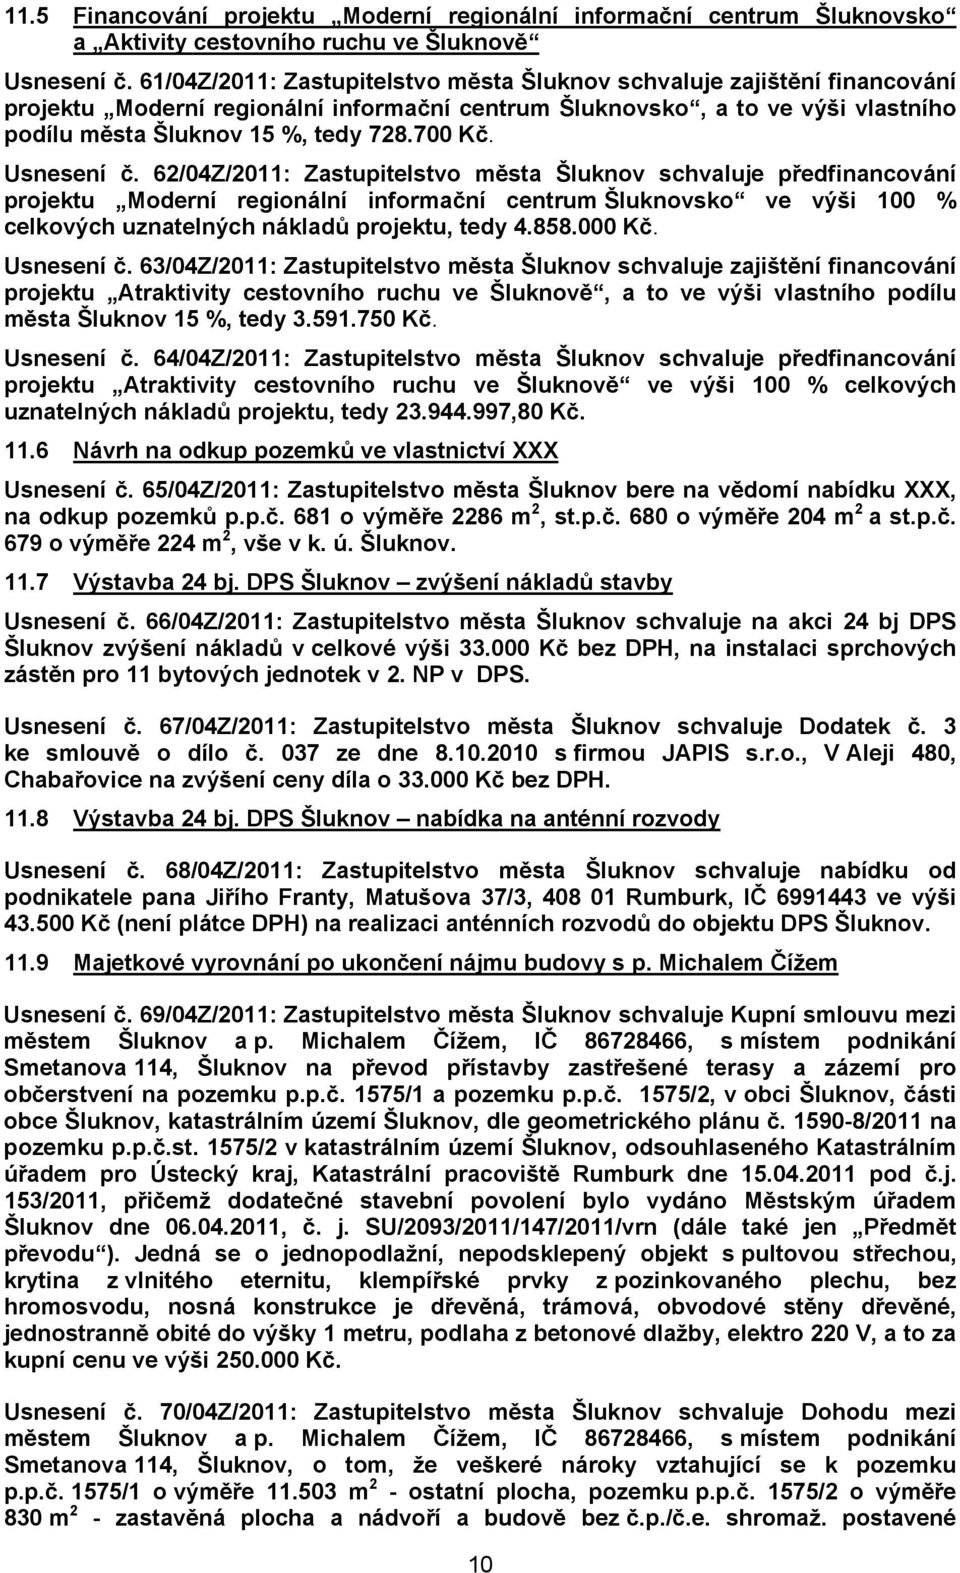 Usnesení č. 62/04Z/2011: Zastupitelstvo města Šluknov schvaluje předfinancování projektu Moderní regionální informační centrum Šluknovsko ve výši 100 % celkových uznatelných nákladů projektu, tedy 4.